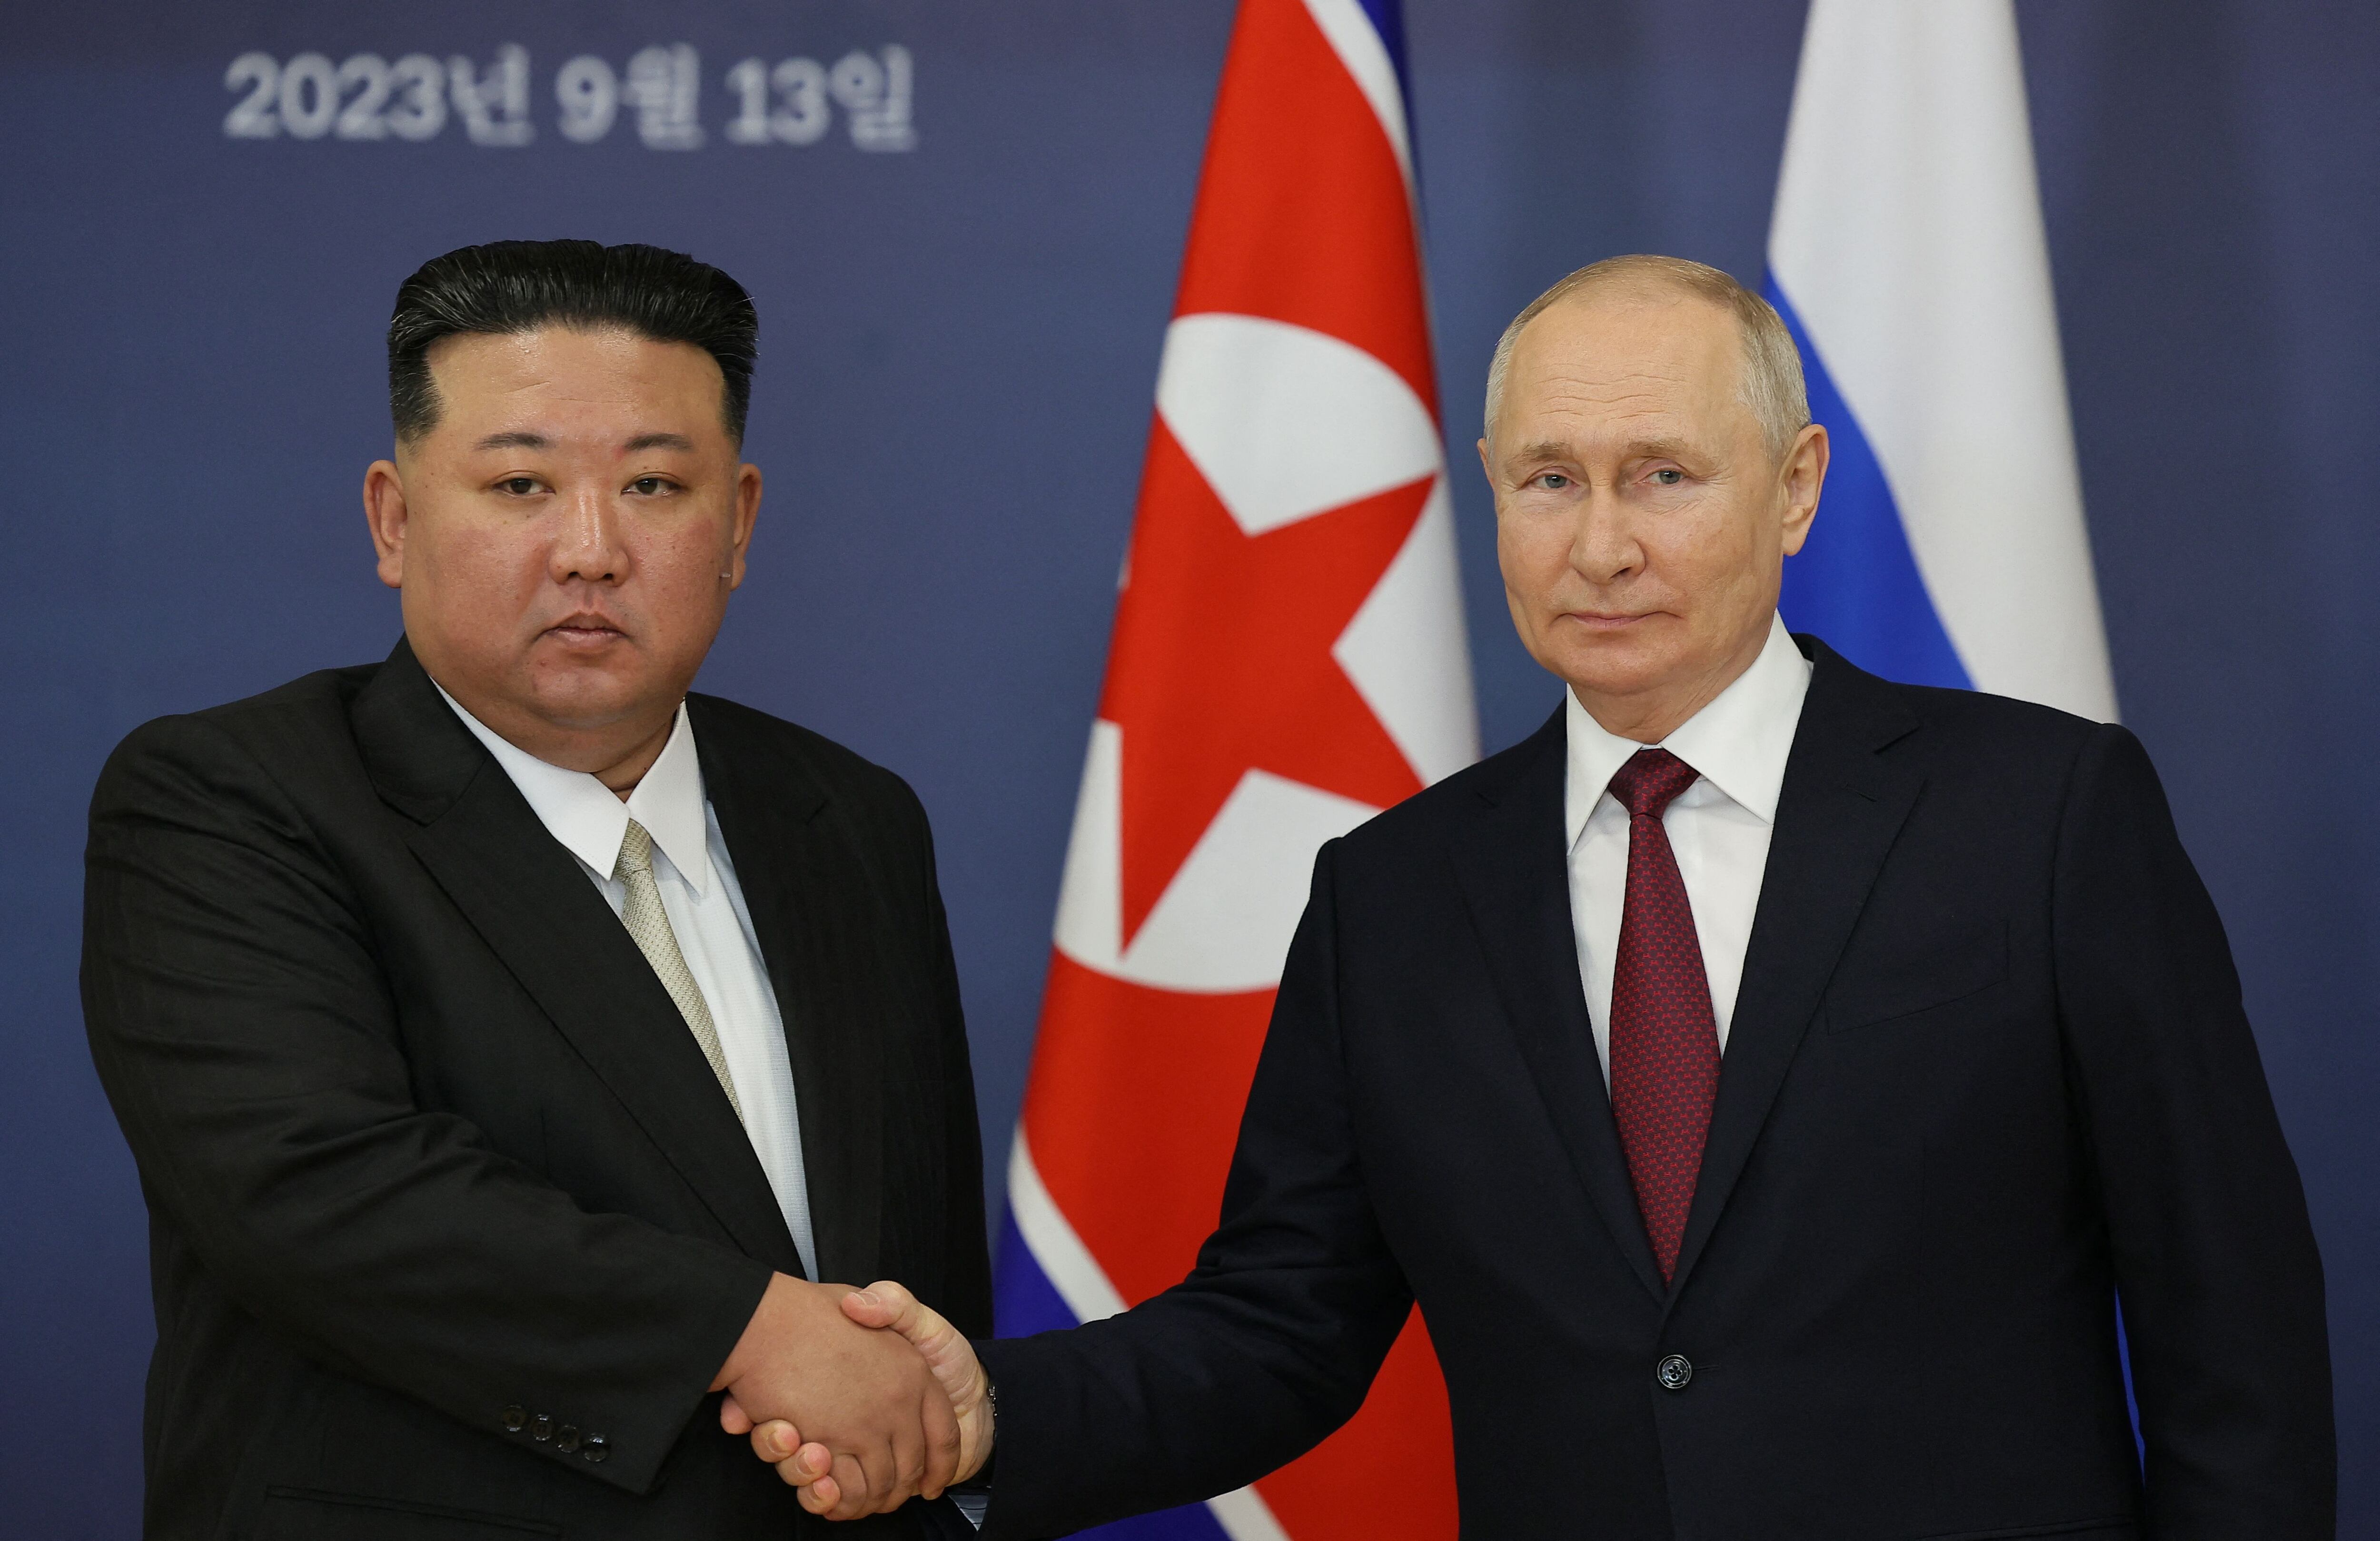 Kim Jong Un culmina histórico viaje a Rusia con regalos y cooperación militar en discusión